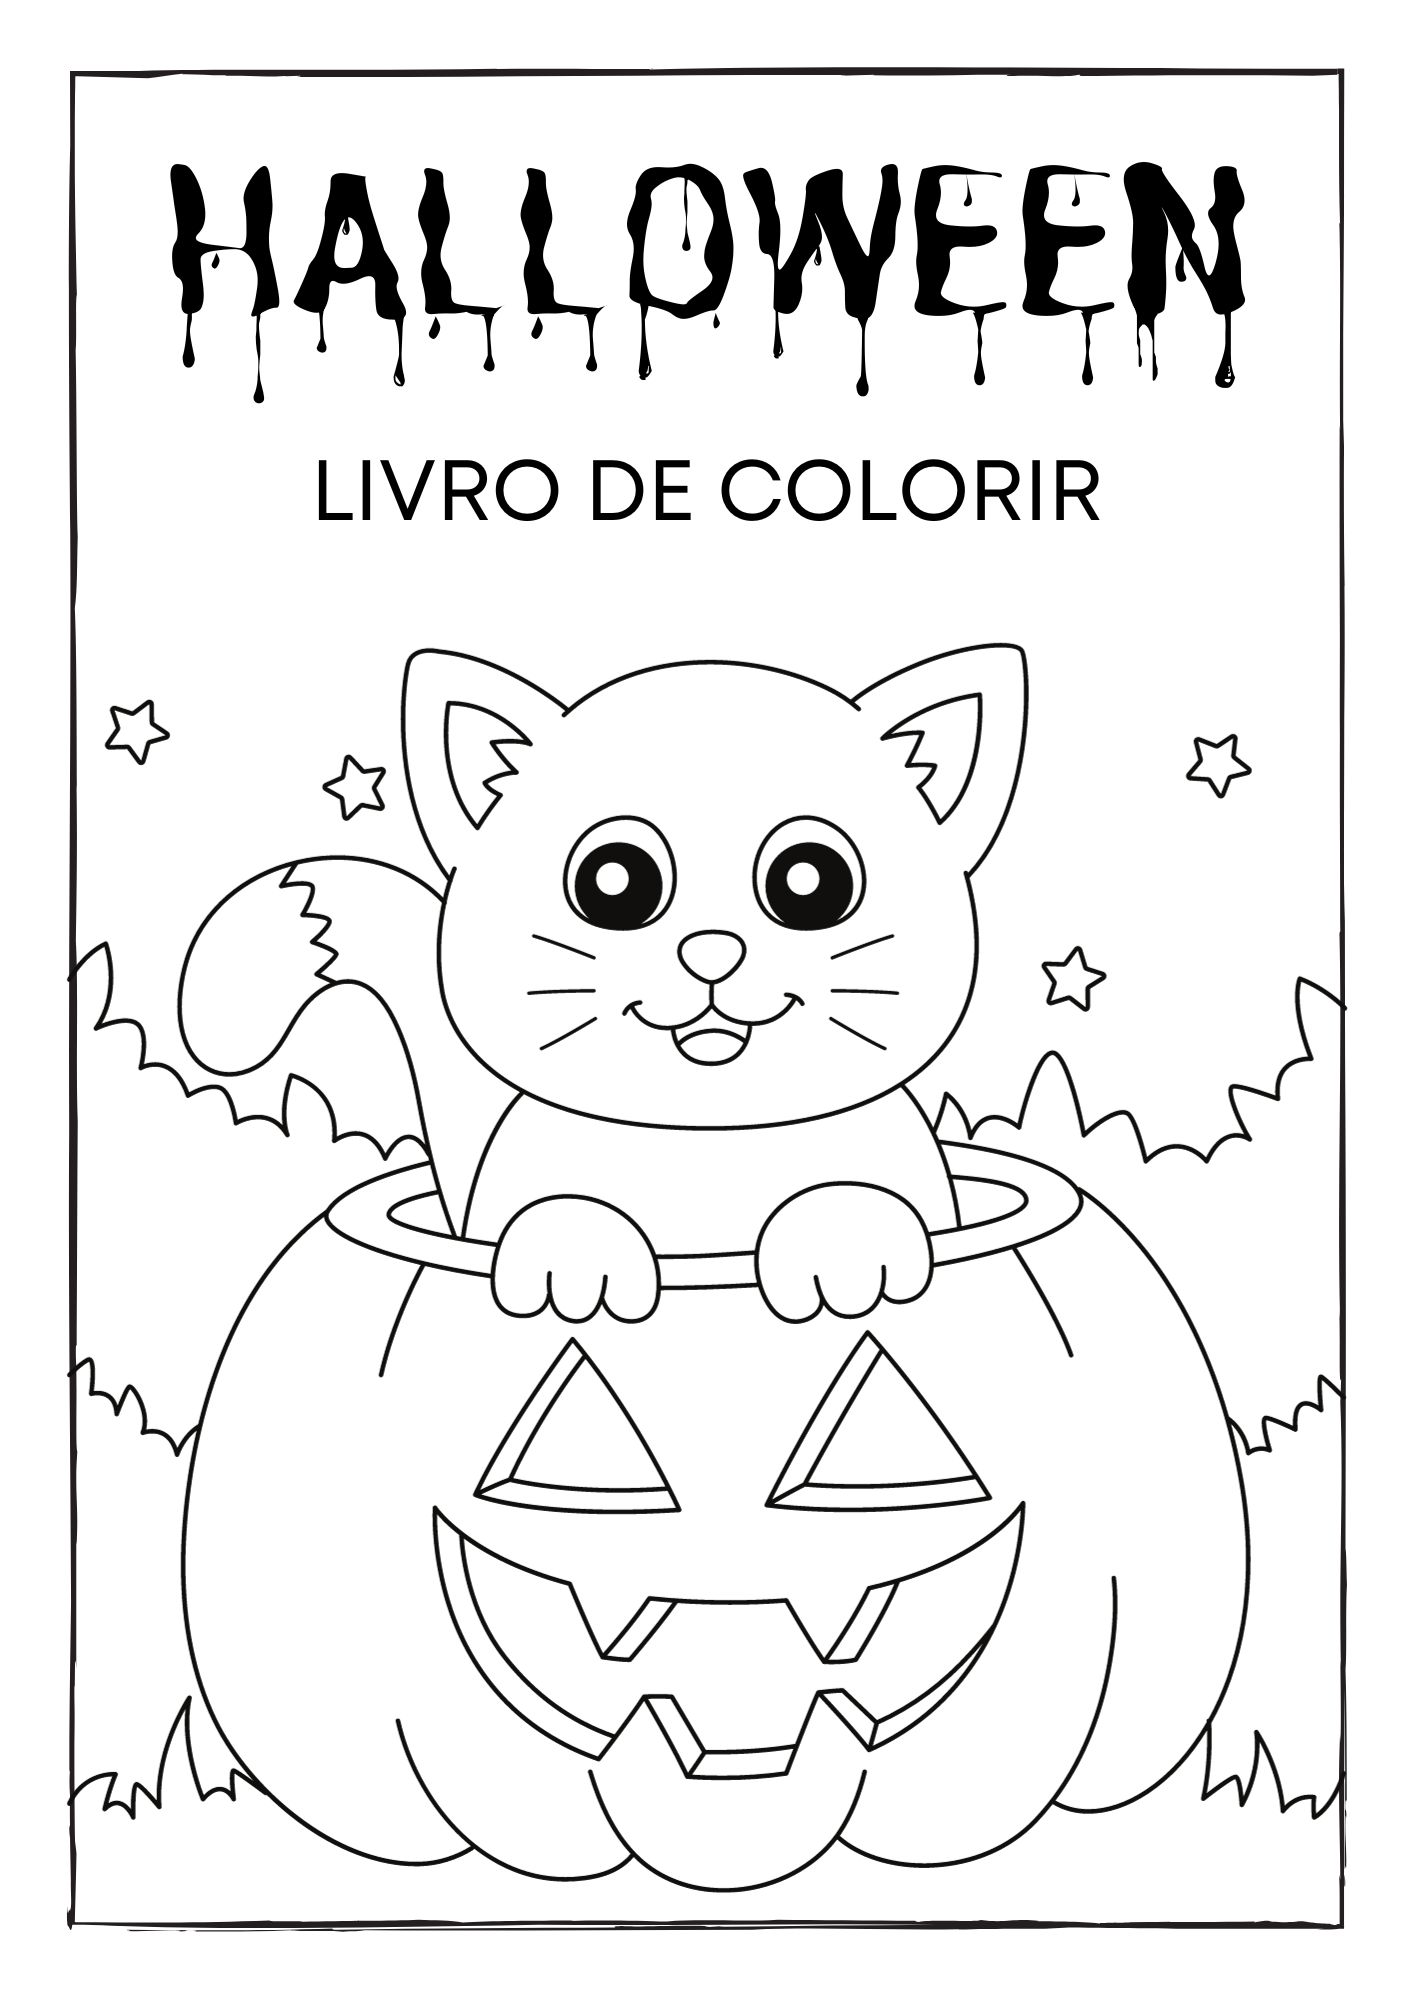 Páginas para colorir assustadoras para diversão de Halloween